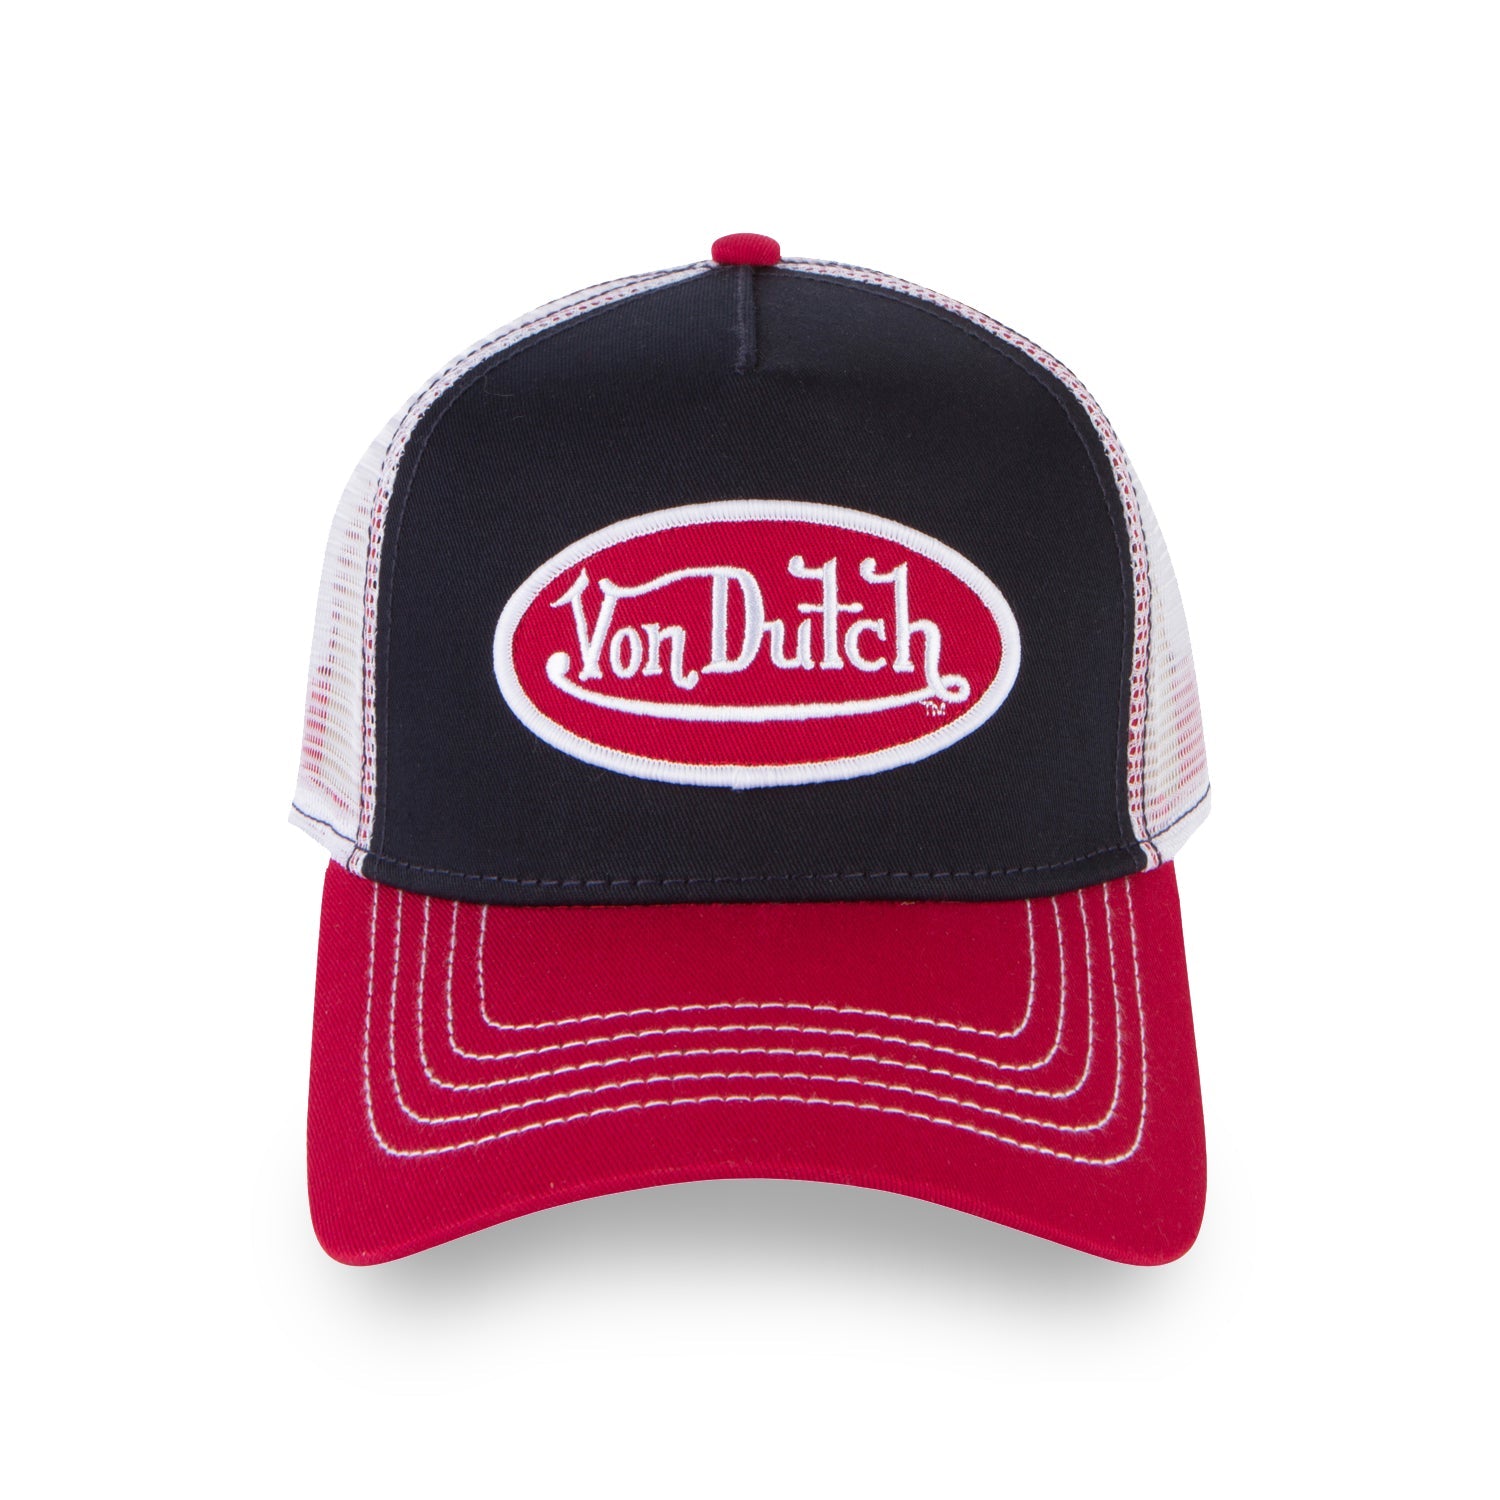 Von Dutch - Trucker Hat (Red/Navy)